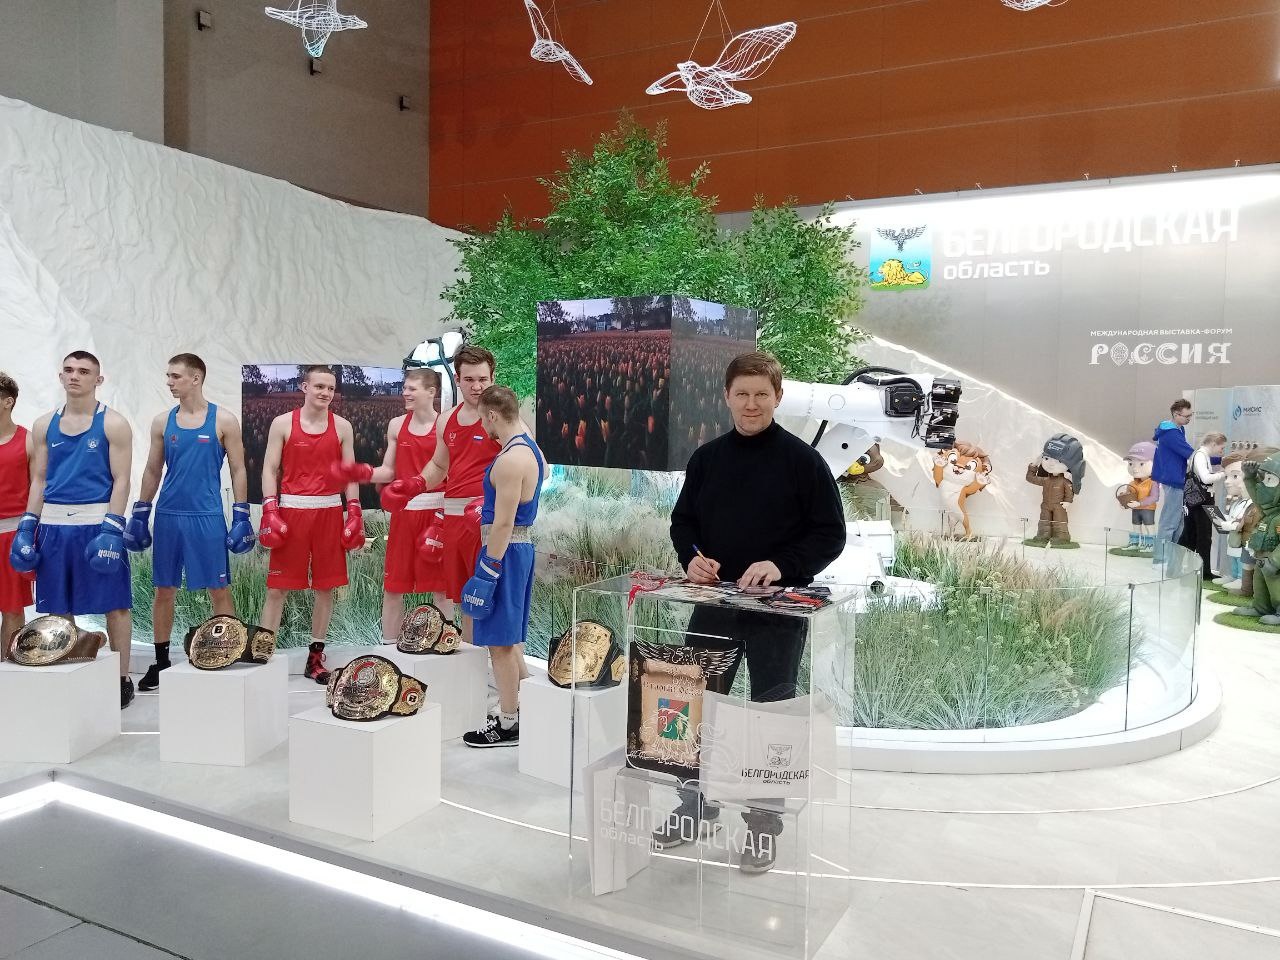 Чемпионские пояса Фёдора Емельяненко, Вадима Немкова и Валентина Молдавского выставили на экспозиции Белгородской области в ВДНХ.